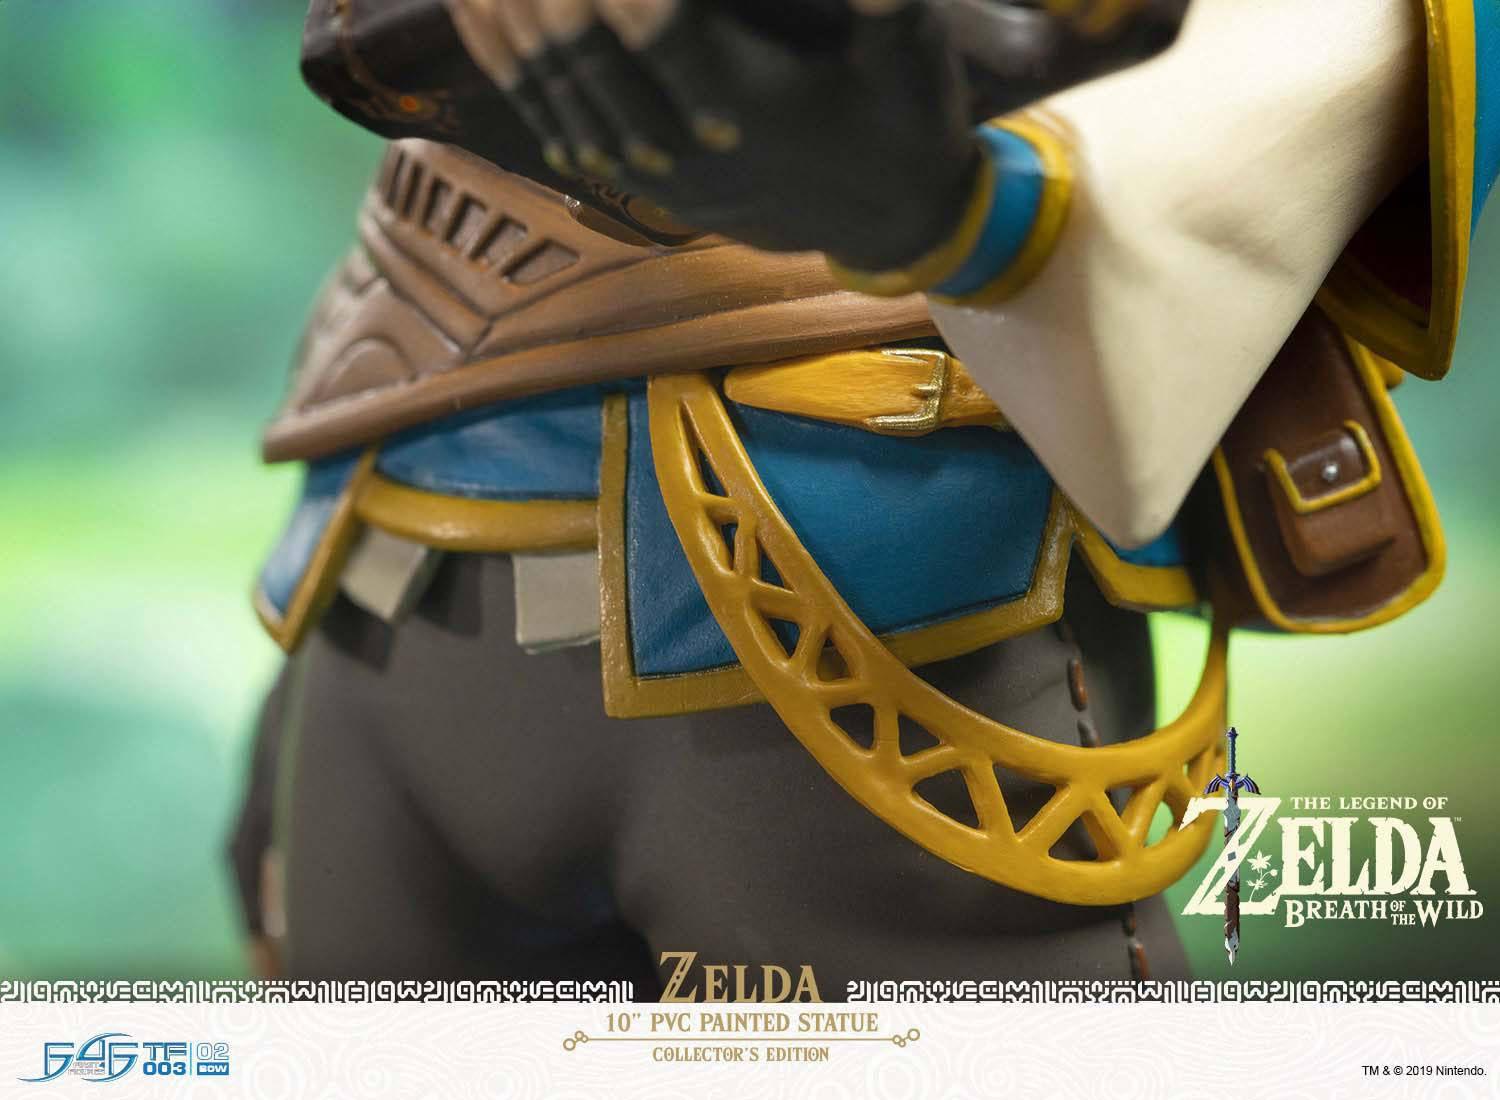 F4FBOTWZC The Legend of Zelda - Zelda Breath of the Wild Vinyl Statue Collector's Edition - First 4 Figures - Titan Pop Culture